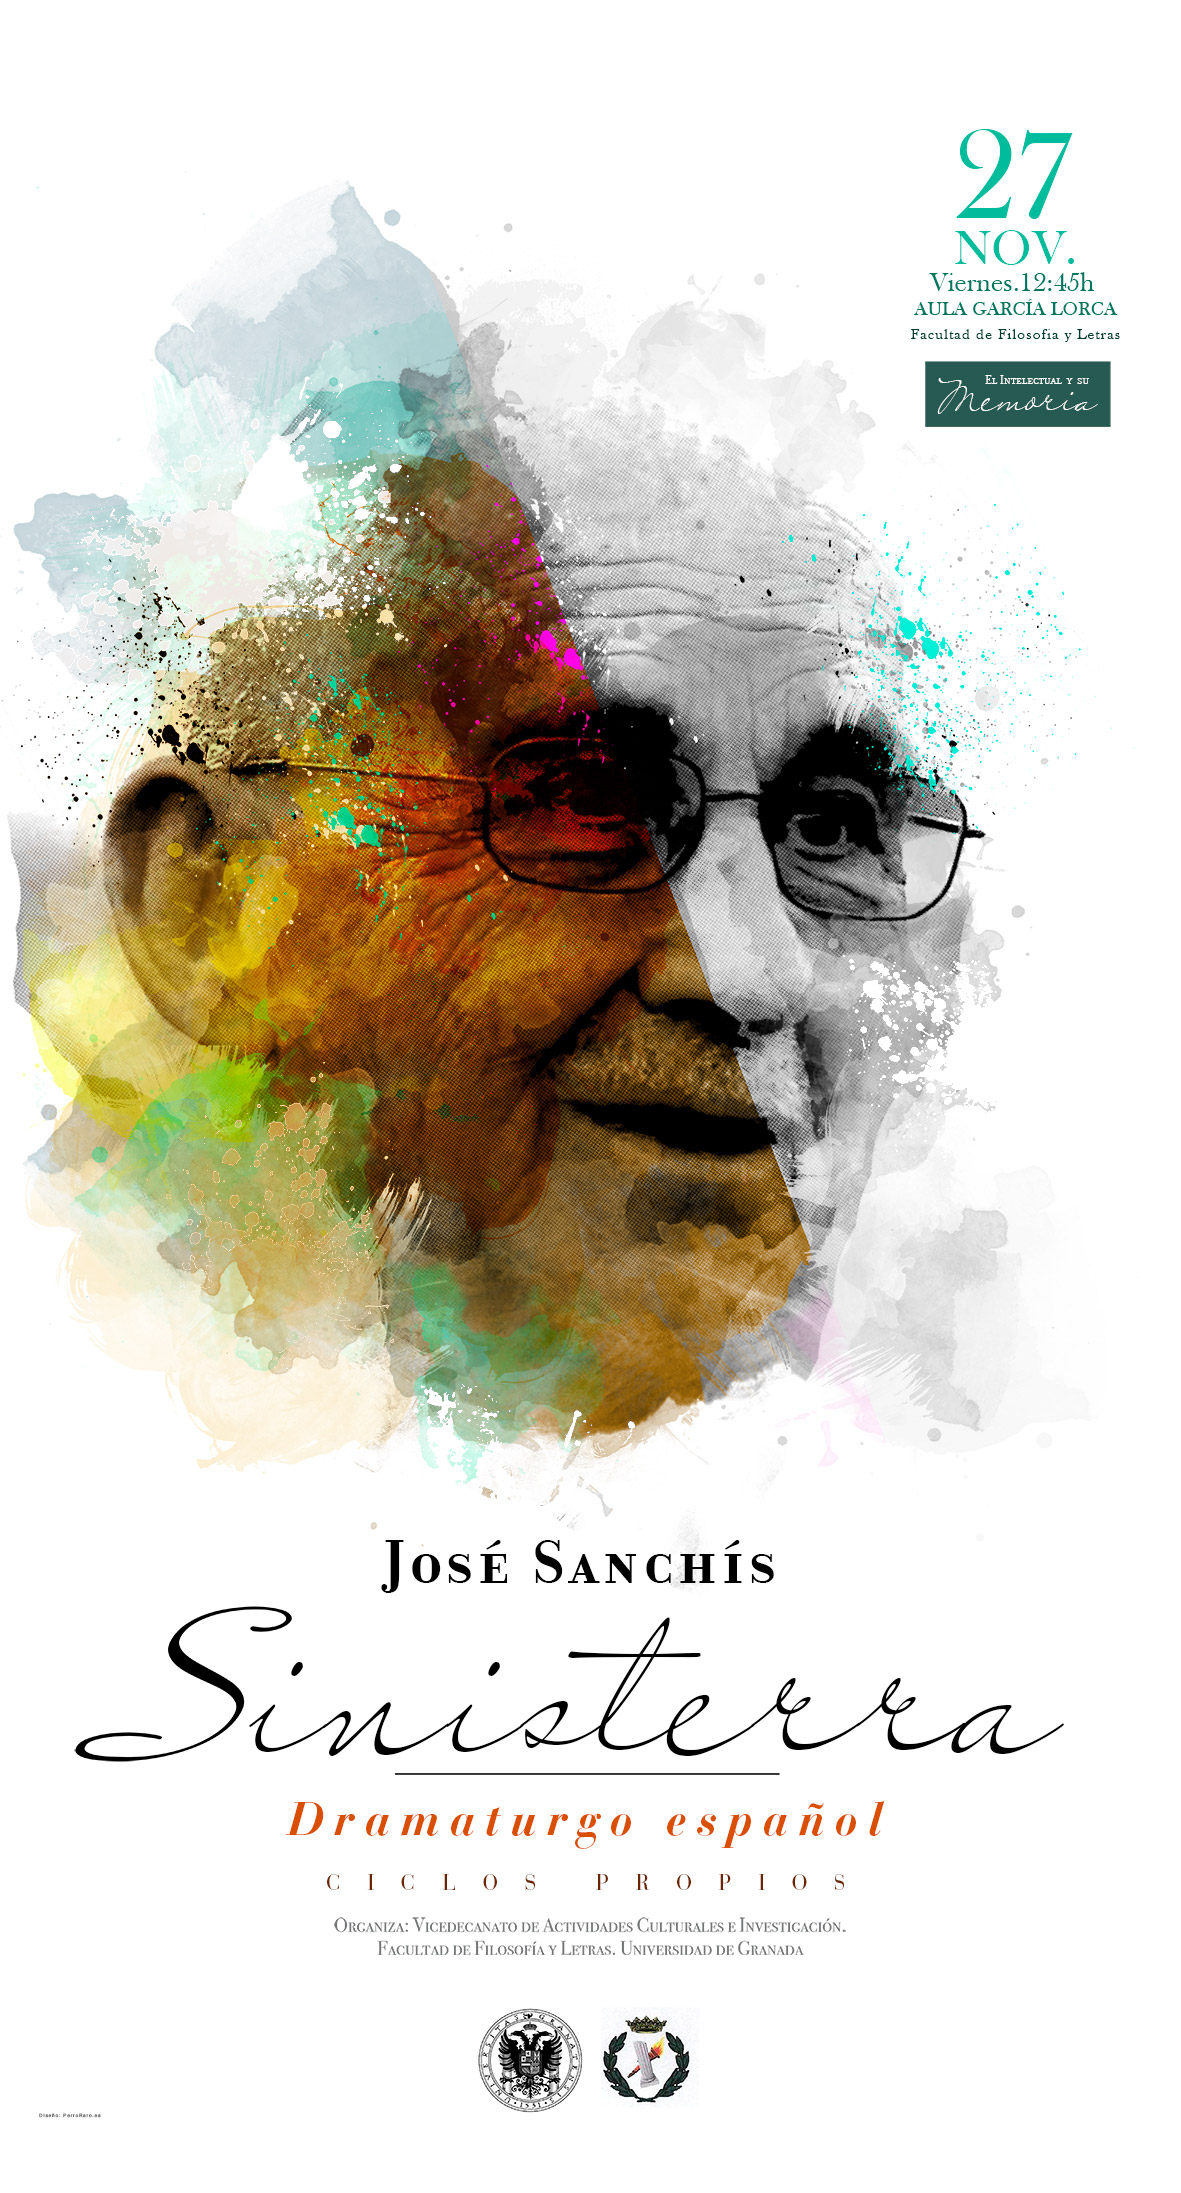 Ciclo "El intelectual y su memoria": entrevista a José Sanchis Sinisterra